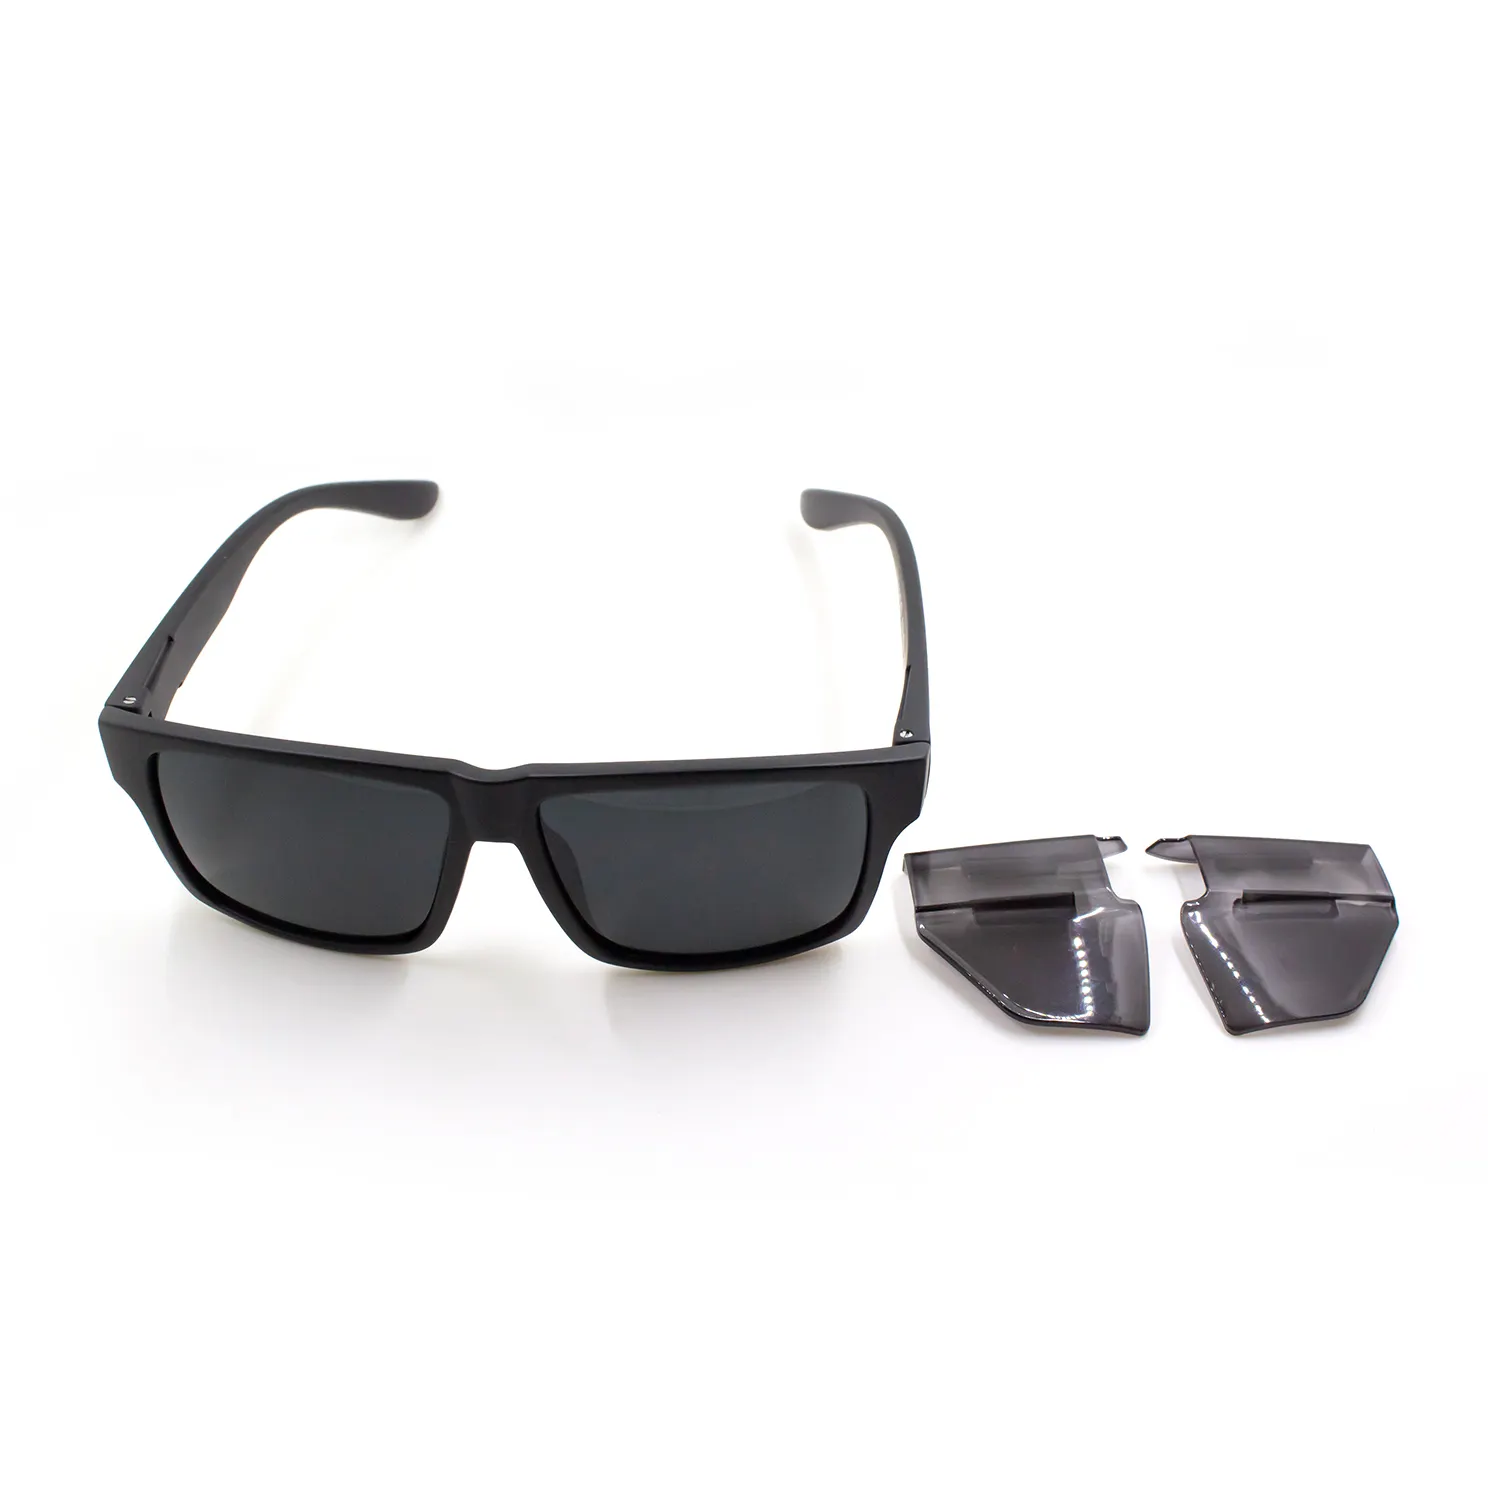 Fuyuanda – blocs de protections latérales amovibles pour lentille Pc, lunettes de sécurité latérales